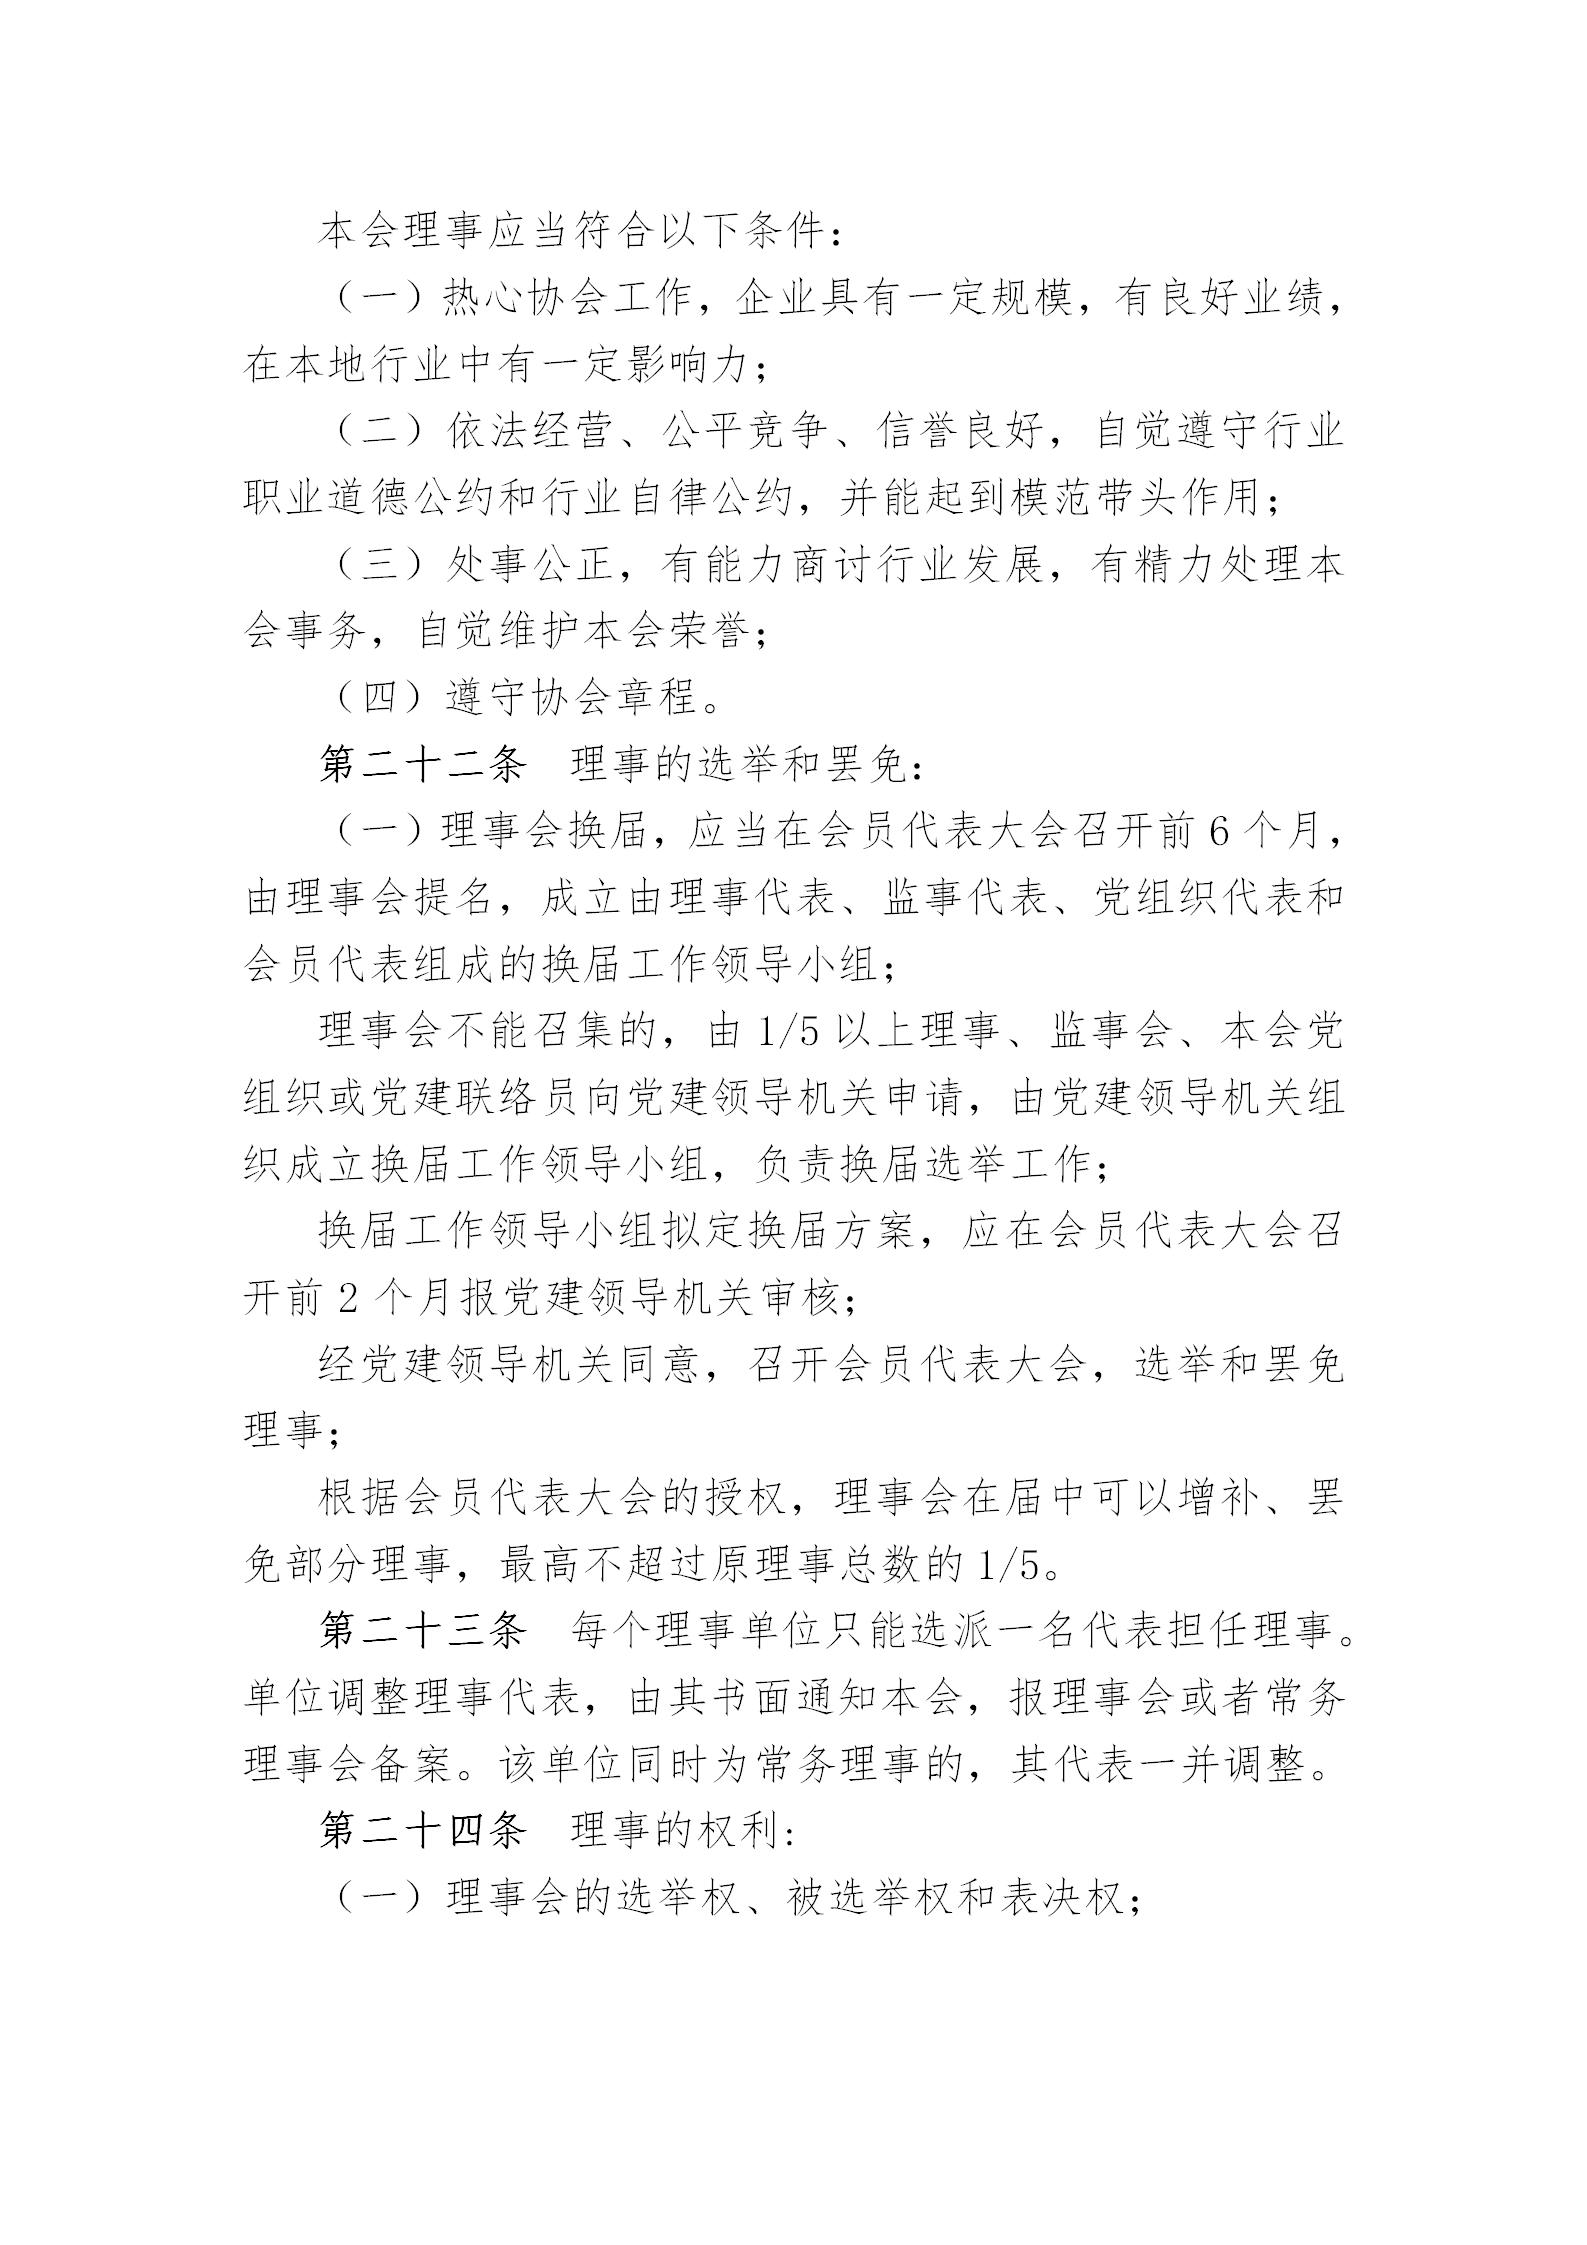 中国演艺设备技术协会章程(定稿)_07.jpg